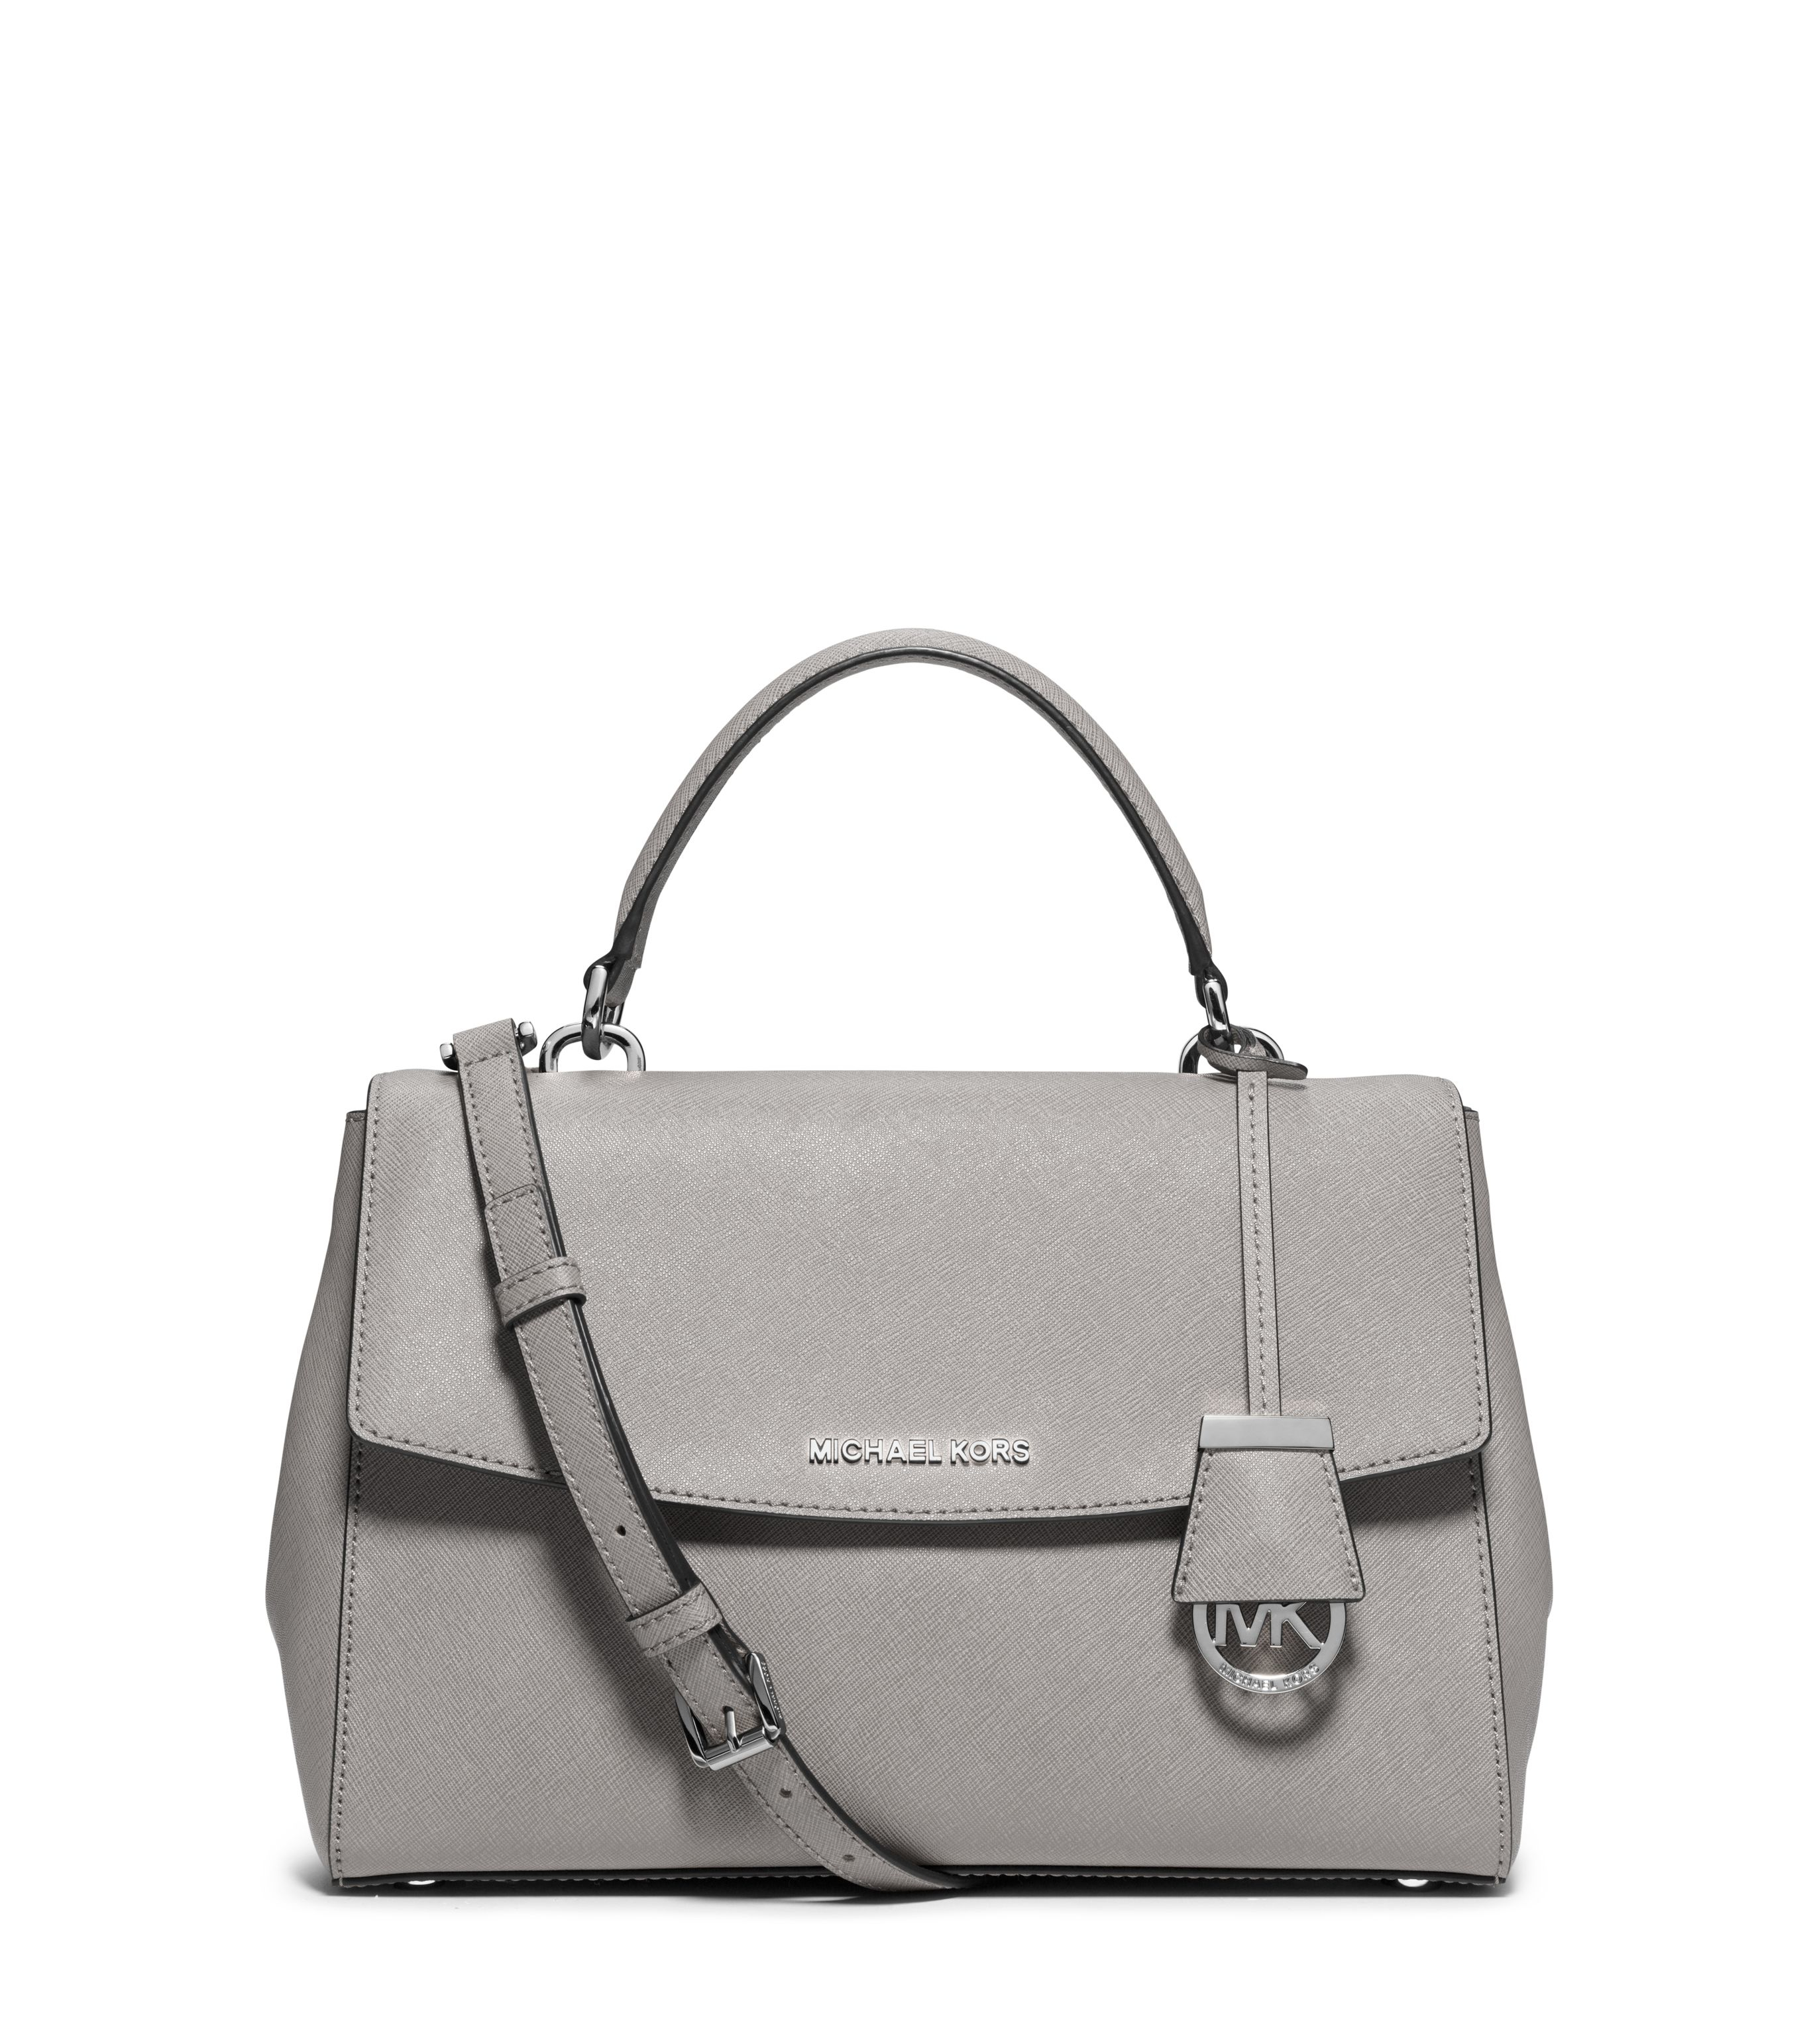 Lyst - Michael Kors Ava Grey Medium Satchel Bag in Gray